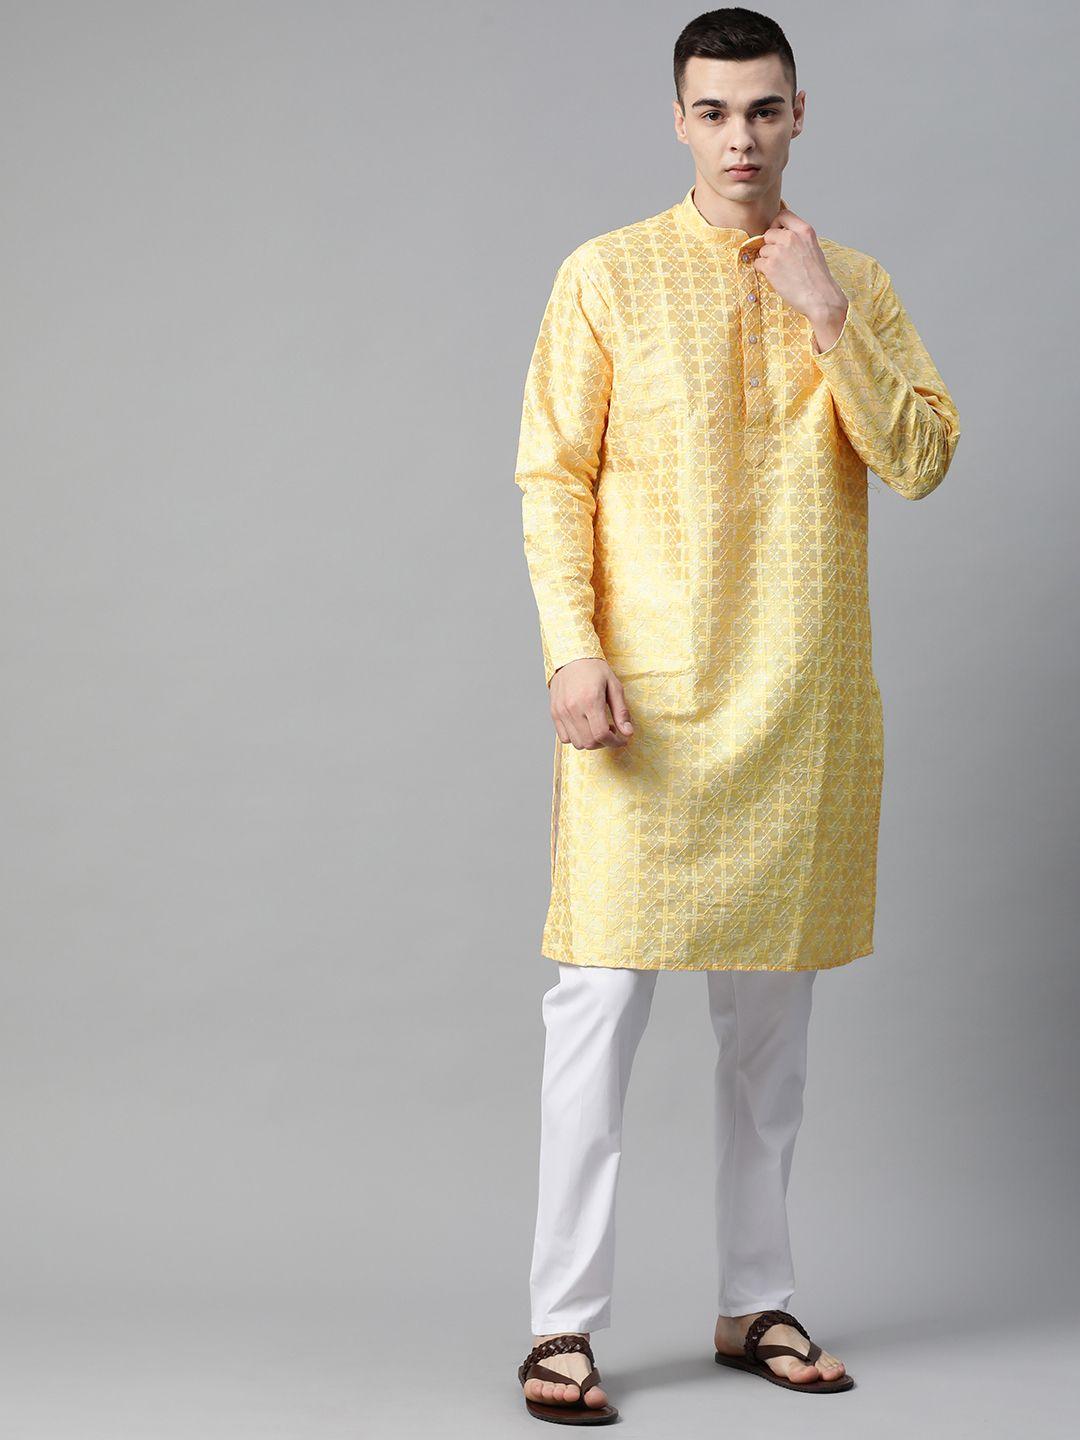 manq embroidered regular kurta with pyjamas